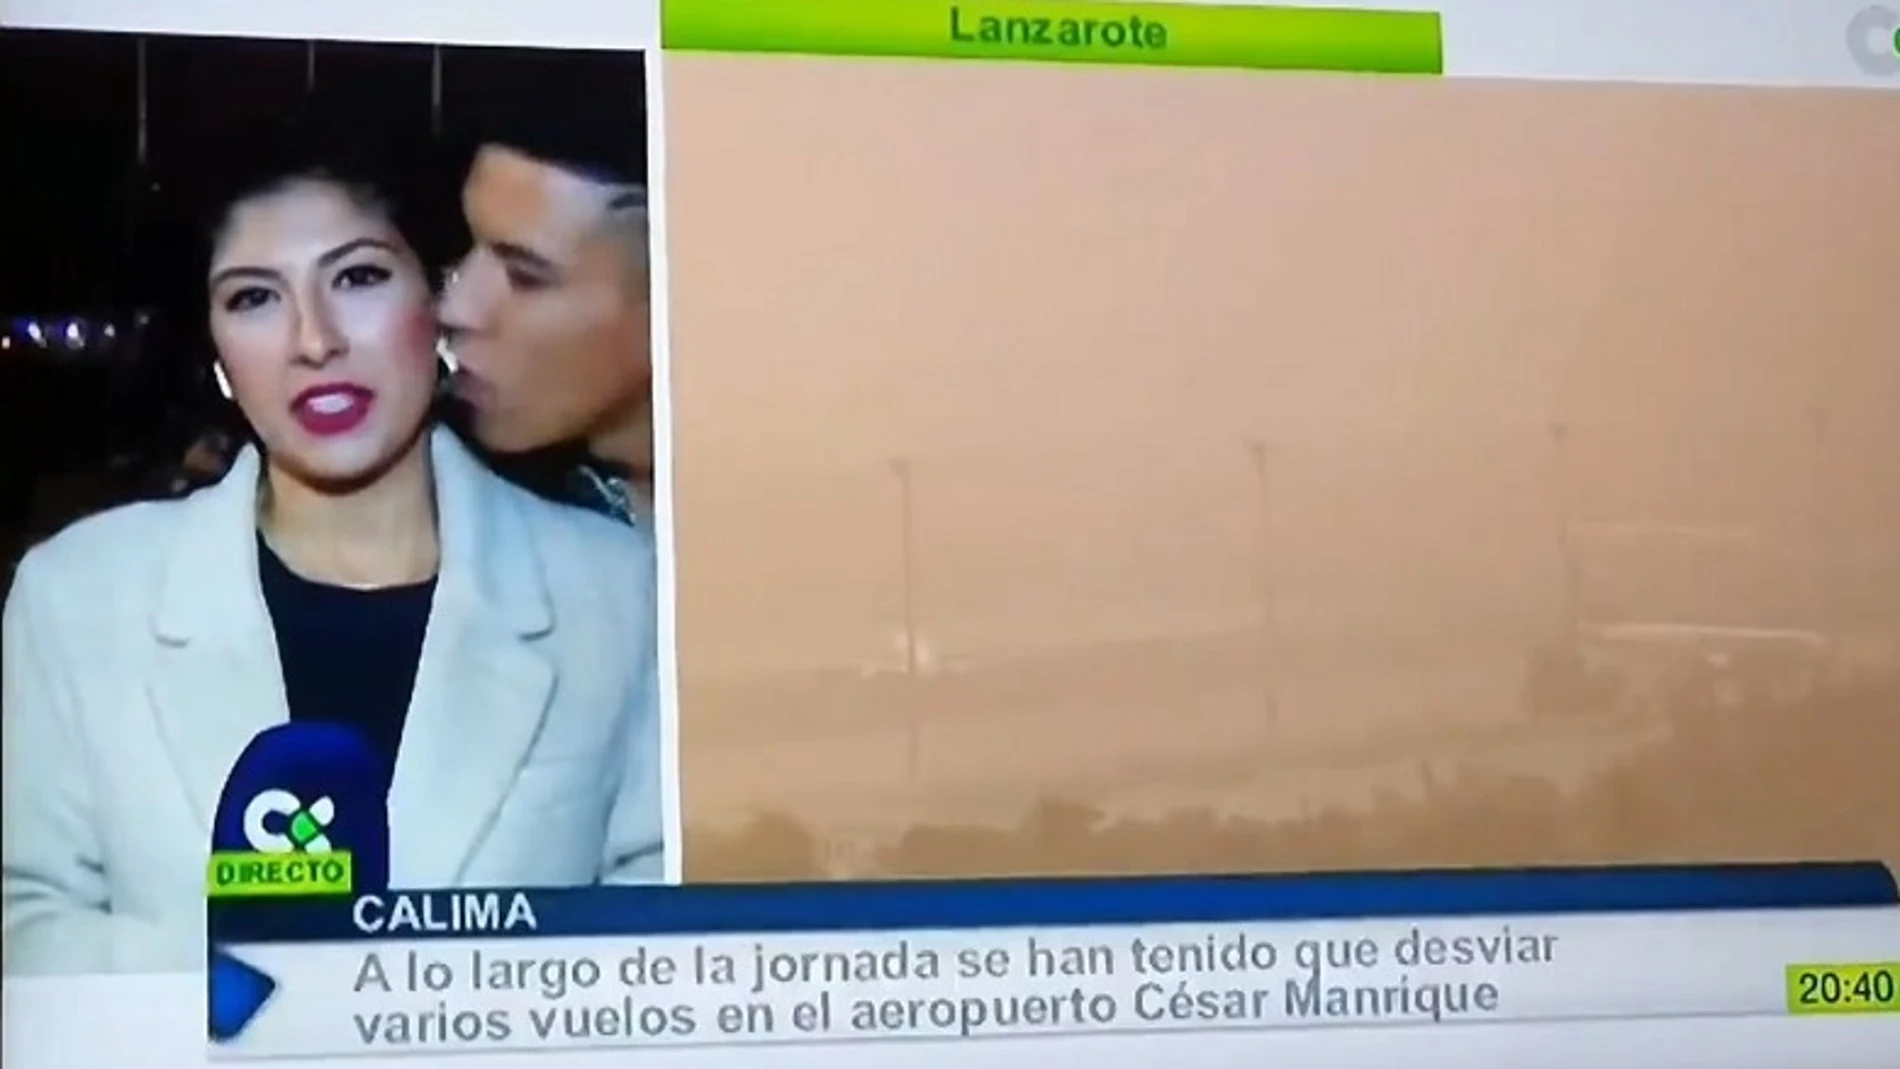 Imagen de la periodista que sufrió acoso machista en pleno directo en Canarias